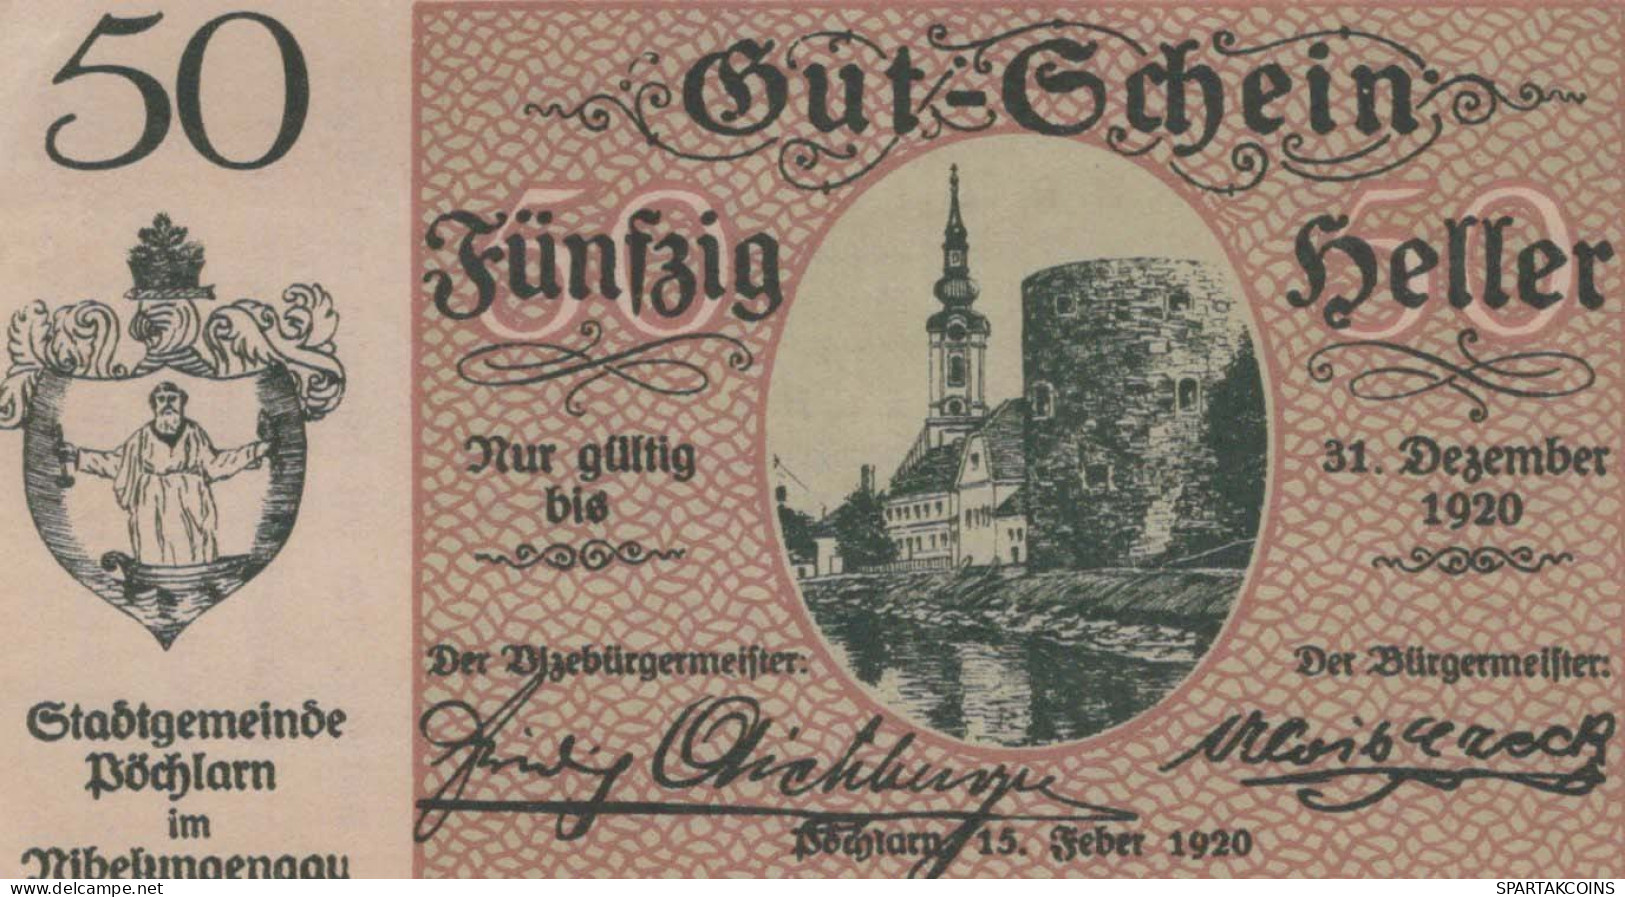 50 HELLER 1920 Stadt PoCHLARN Niedrigeren Österreich Notgeld Banknote #PE388 - [11] Local Banknote Issues